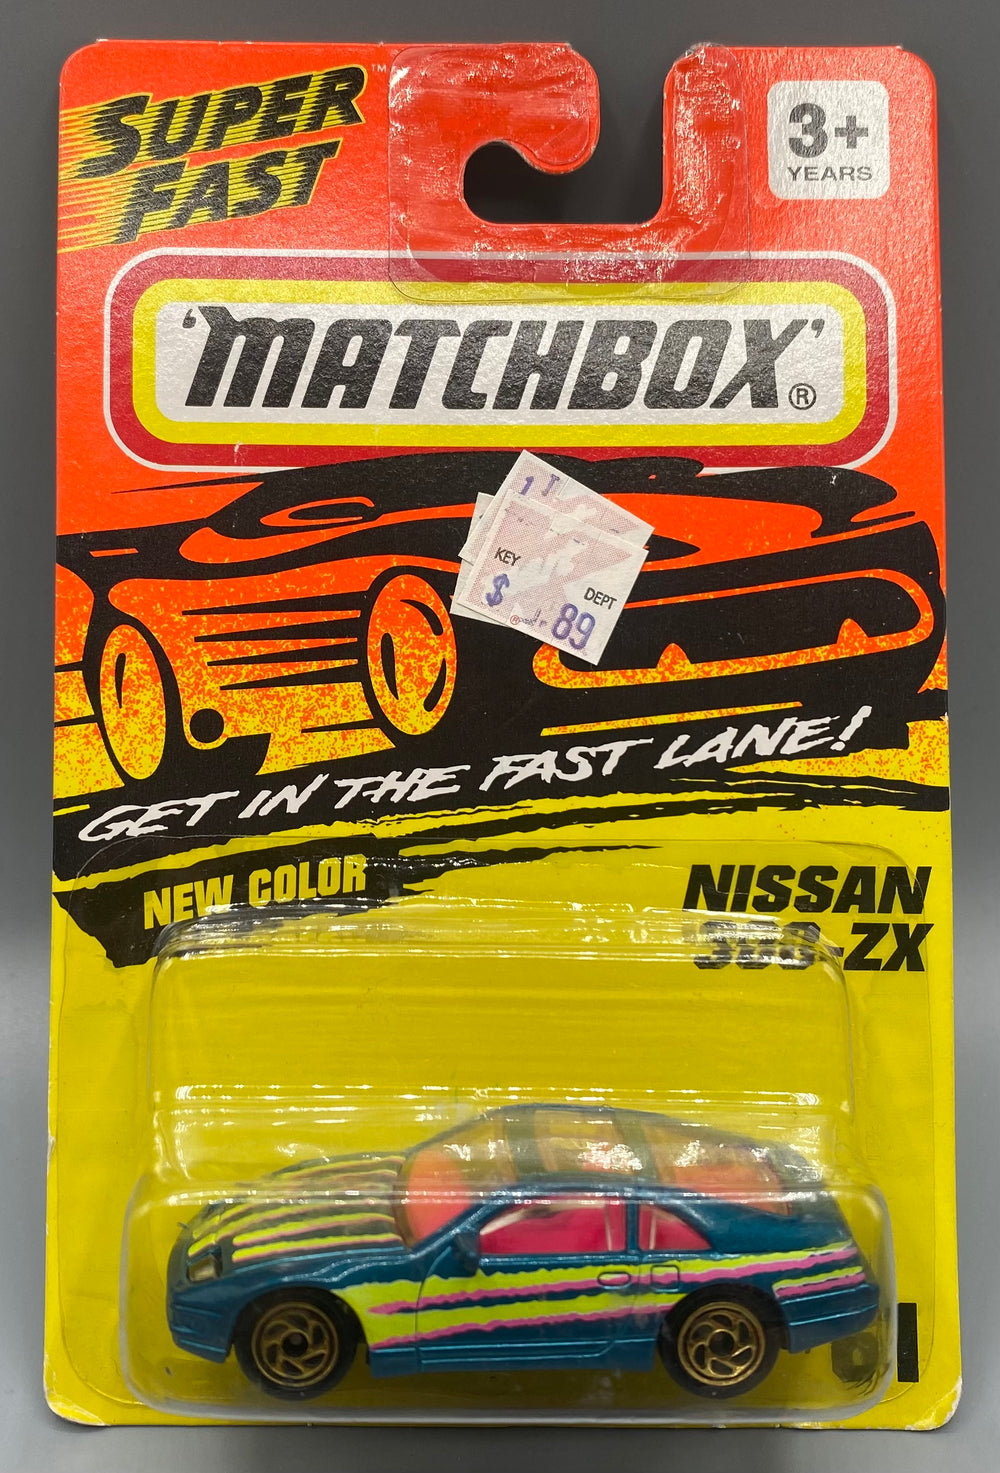 Matchbox Nissan 300ZX